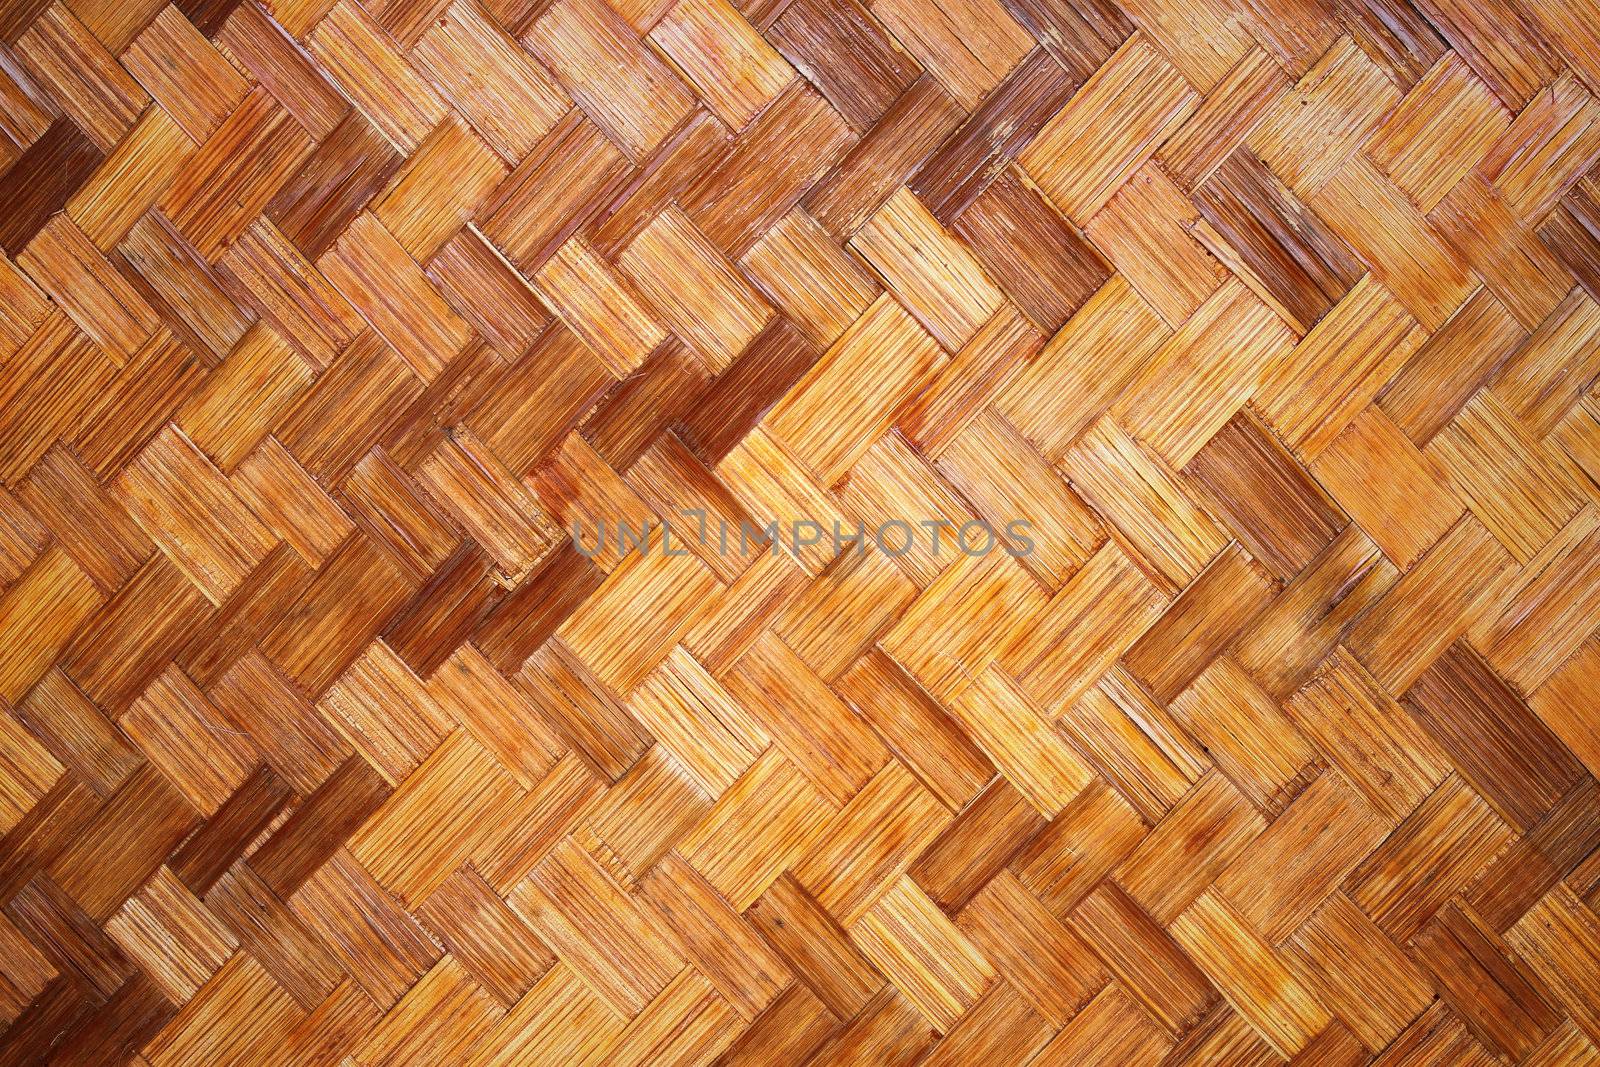 Bamboo wood texture ,Thai handwork by geargodz